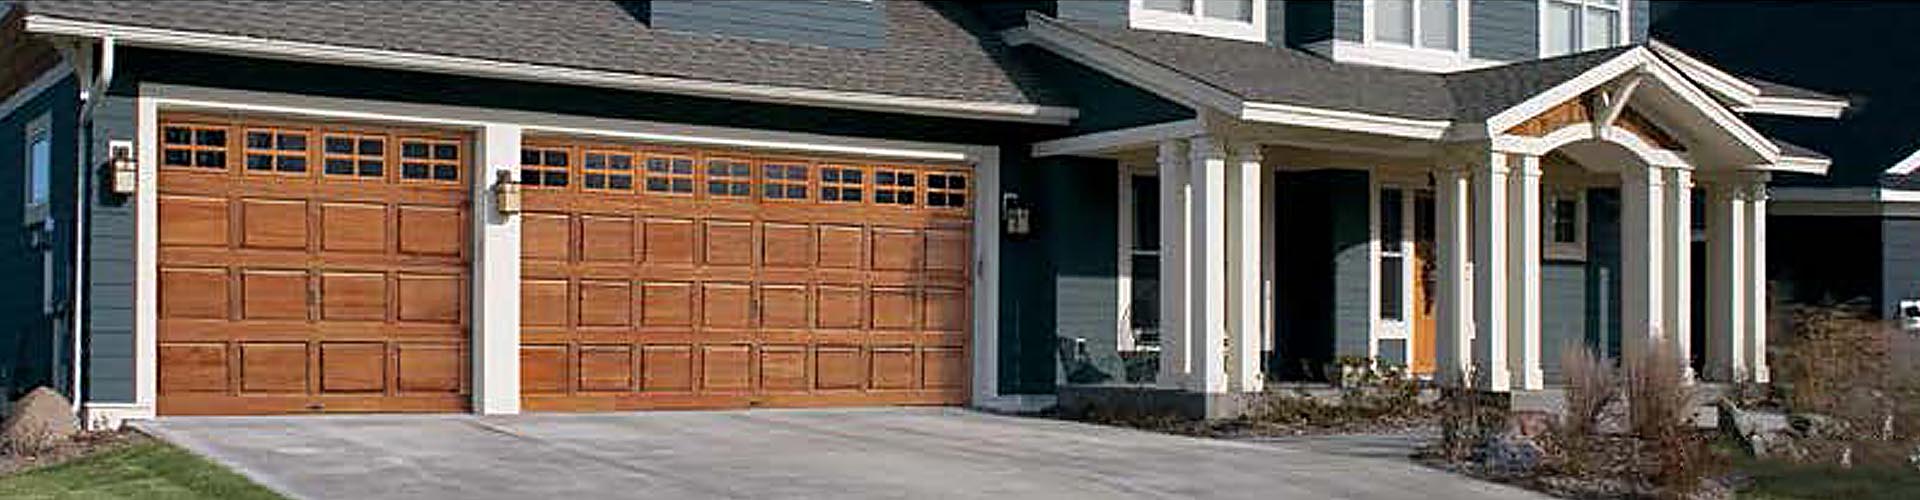 Garage Doors, Overhead Garage Door, Edmond, OKC, Oklahoma City